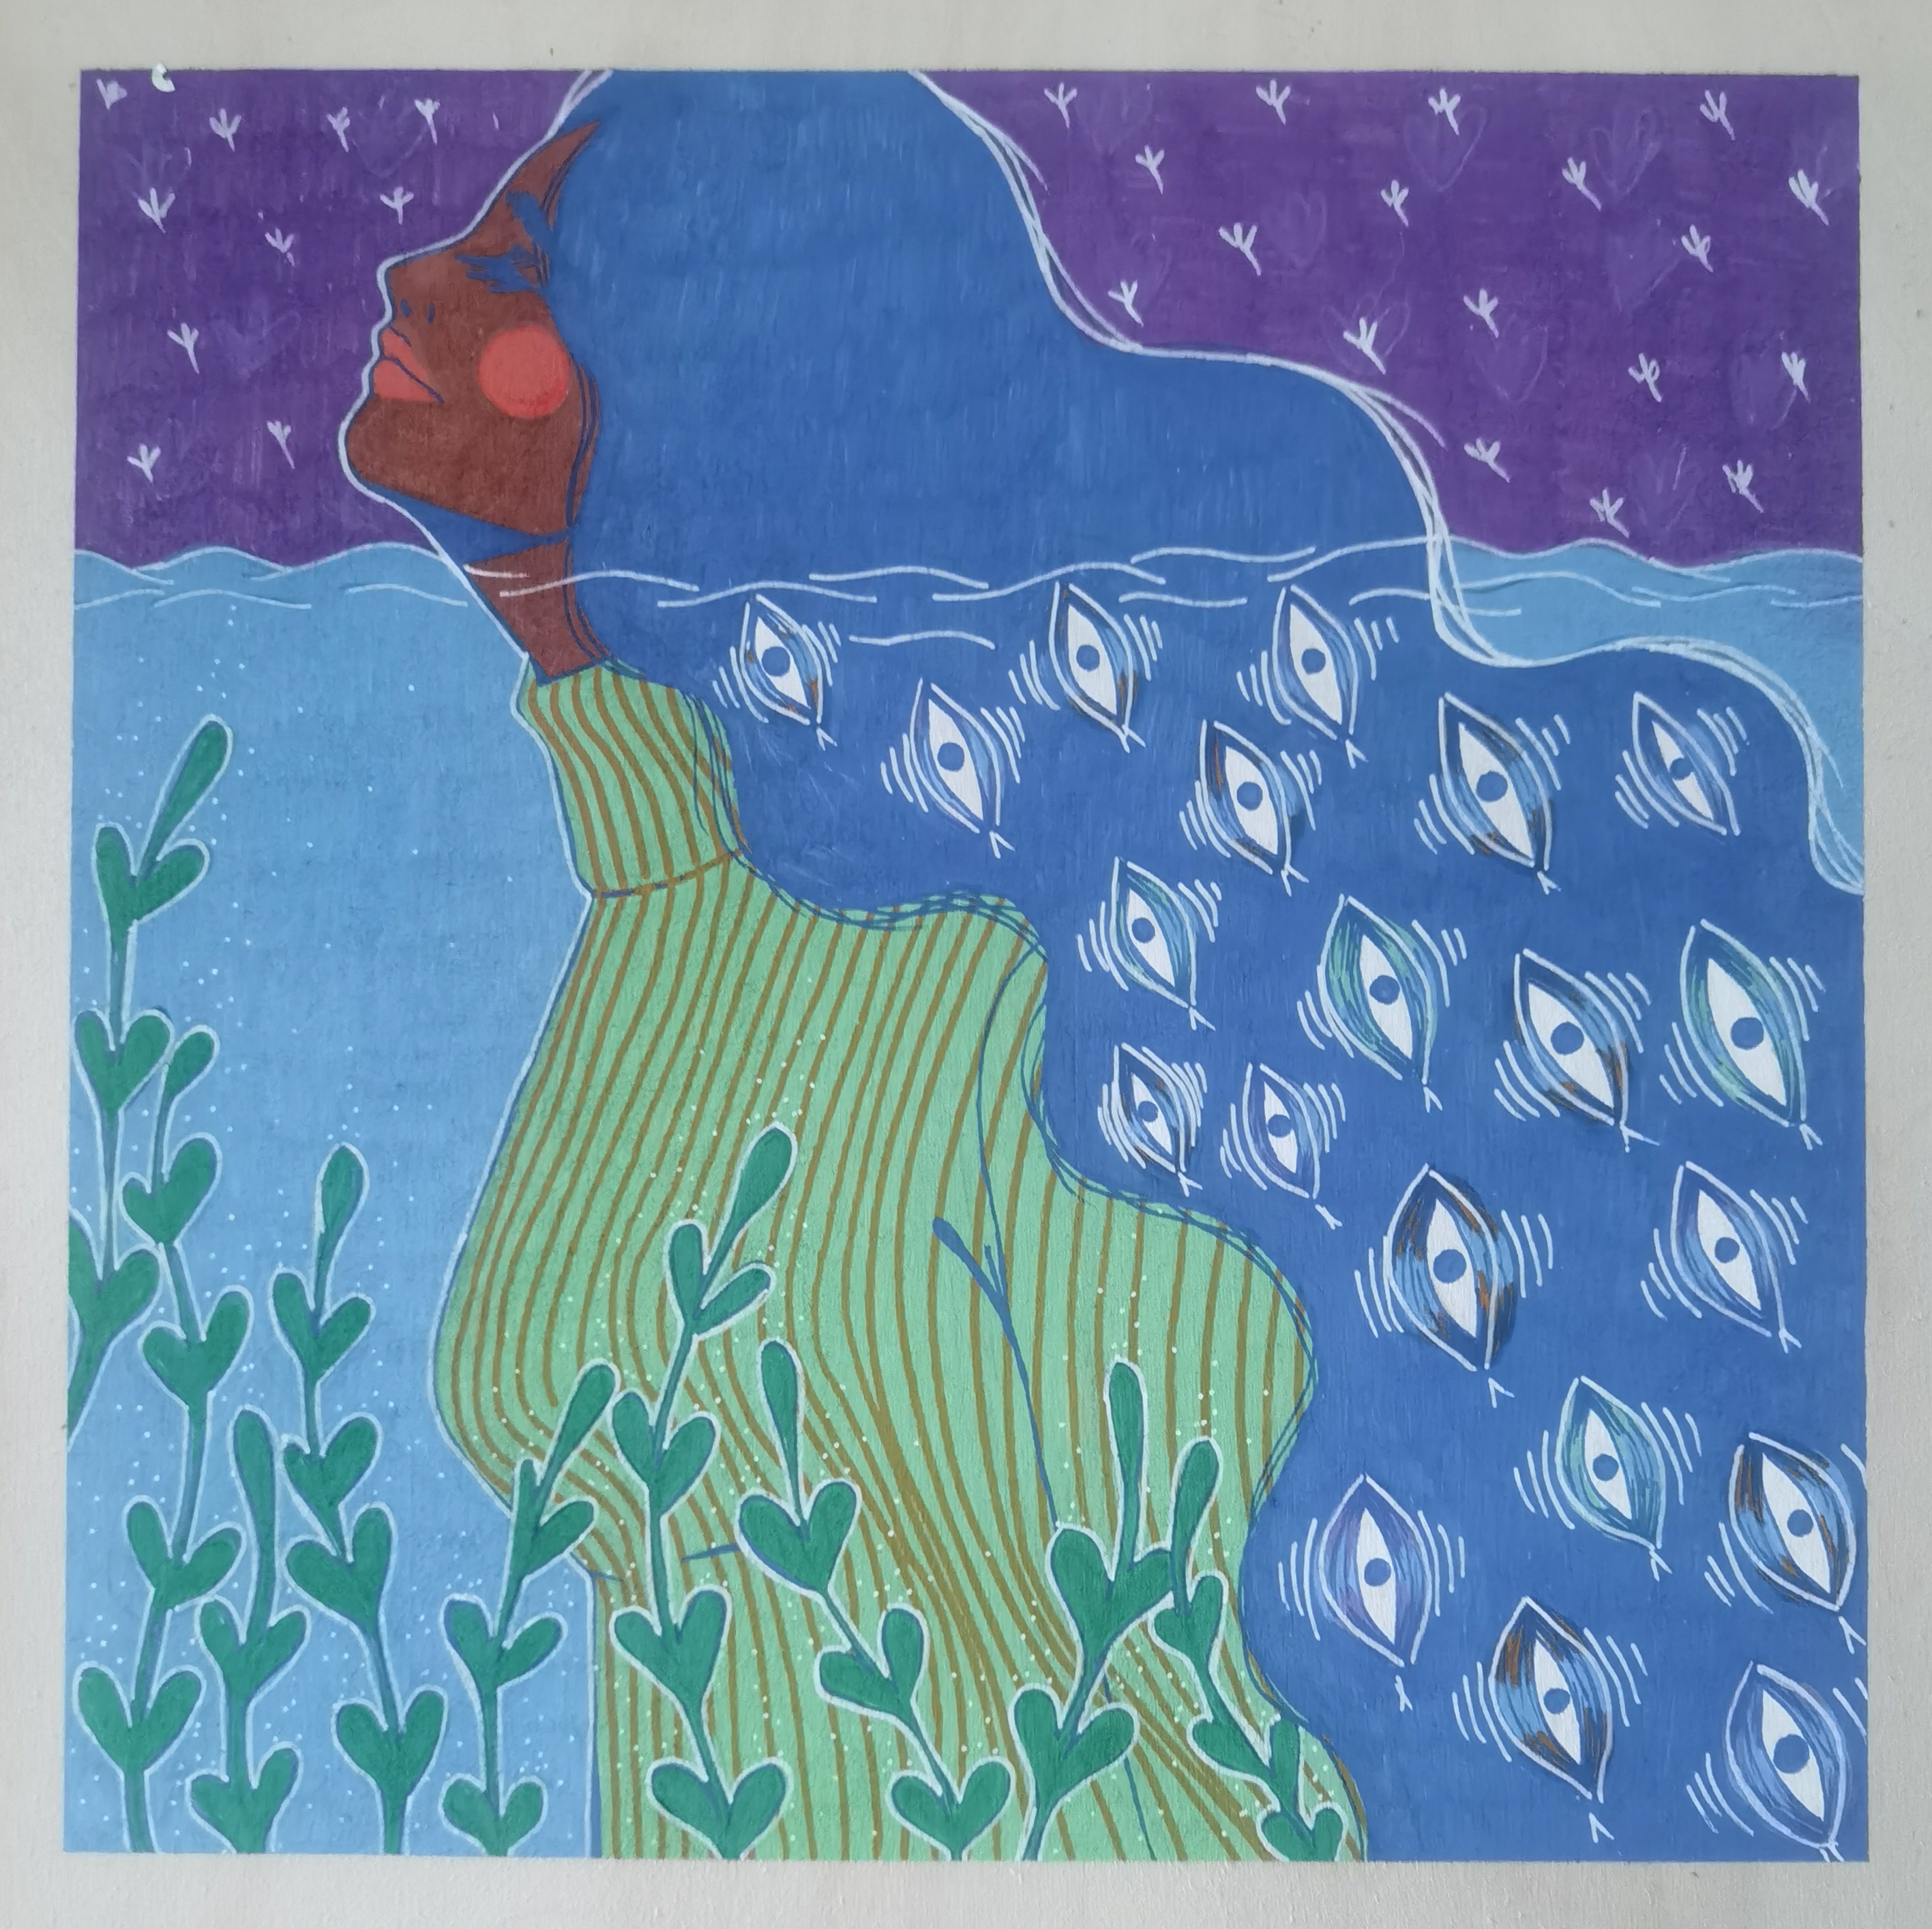 Eine Frau im Wasser, im Vordergrund schlängeln sich grüne Ranken, die Frau ragt mit dem Kopf aus dem Wasser, sie hat lange blaue Haare und trägt im Wasser einen grünen Rollkragenpullover